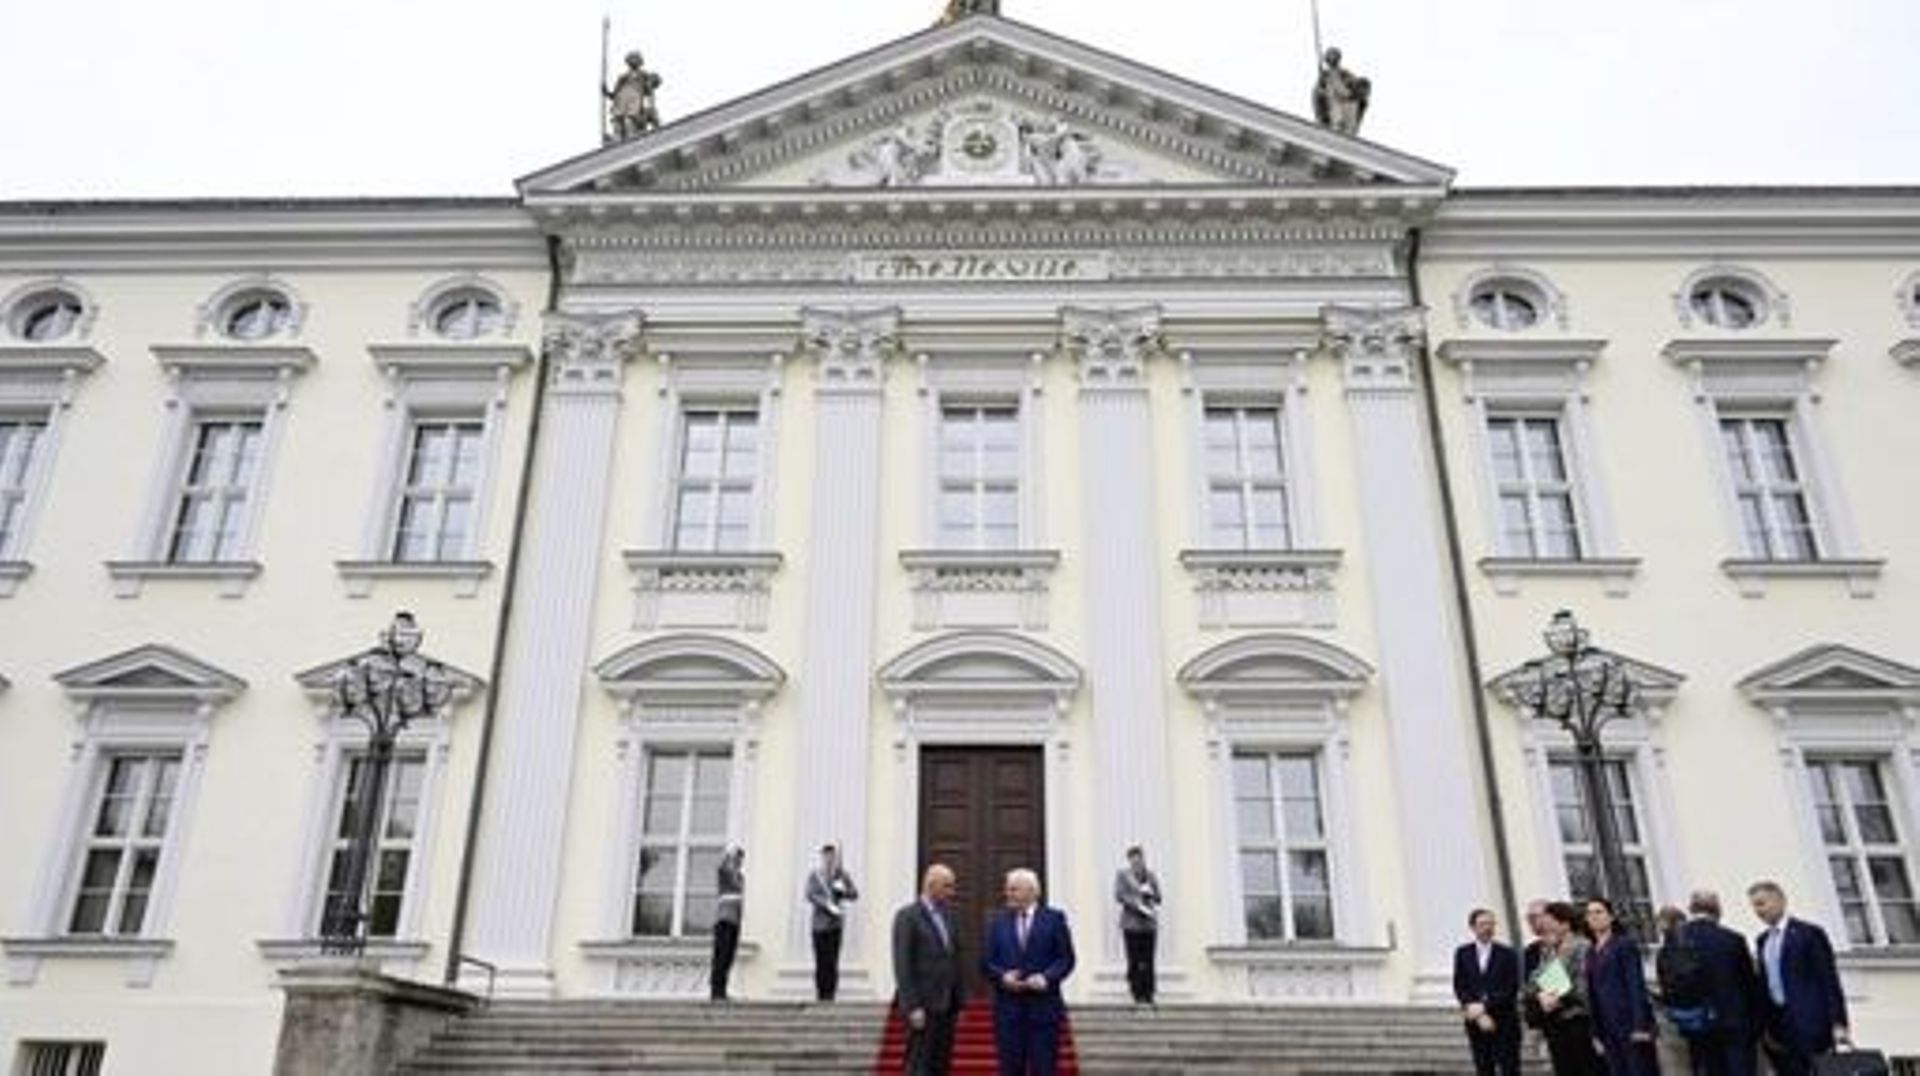 Le président allemand Frank-Walter Steinmeier et le président suisse Alain Berset posent devant le palais présidentiel de Bellevue à Berlin, le 18 avril 2023. John MACDOUGALL / AFP